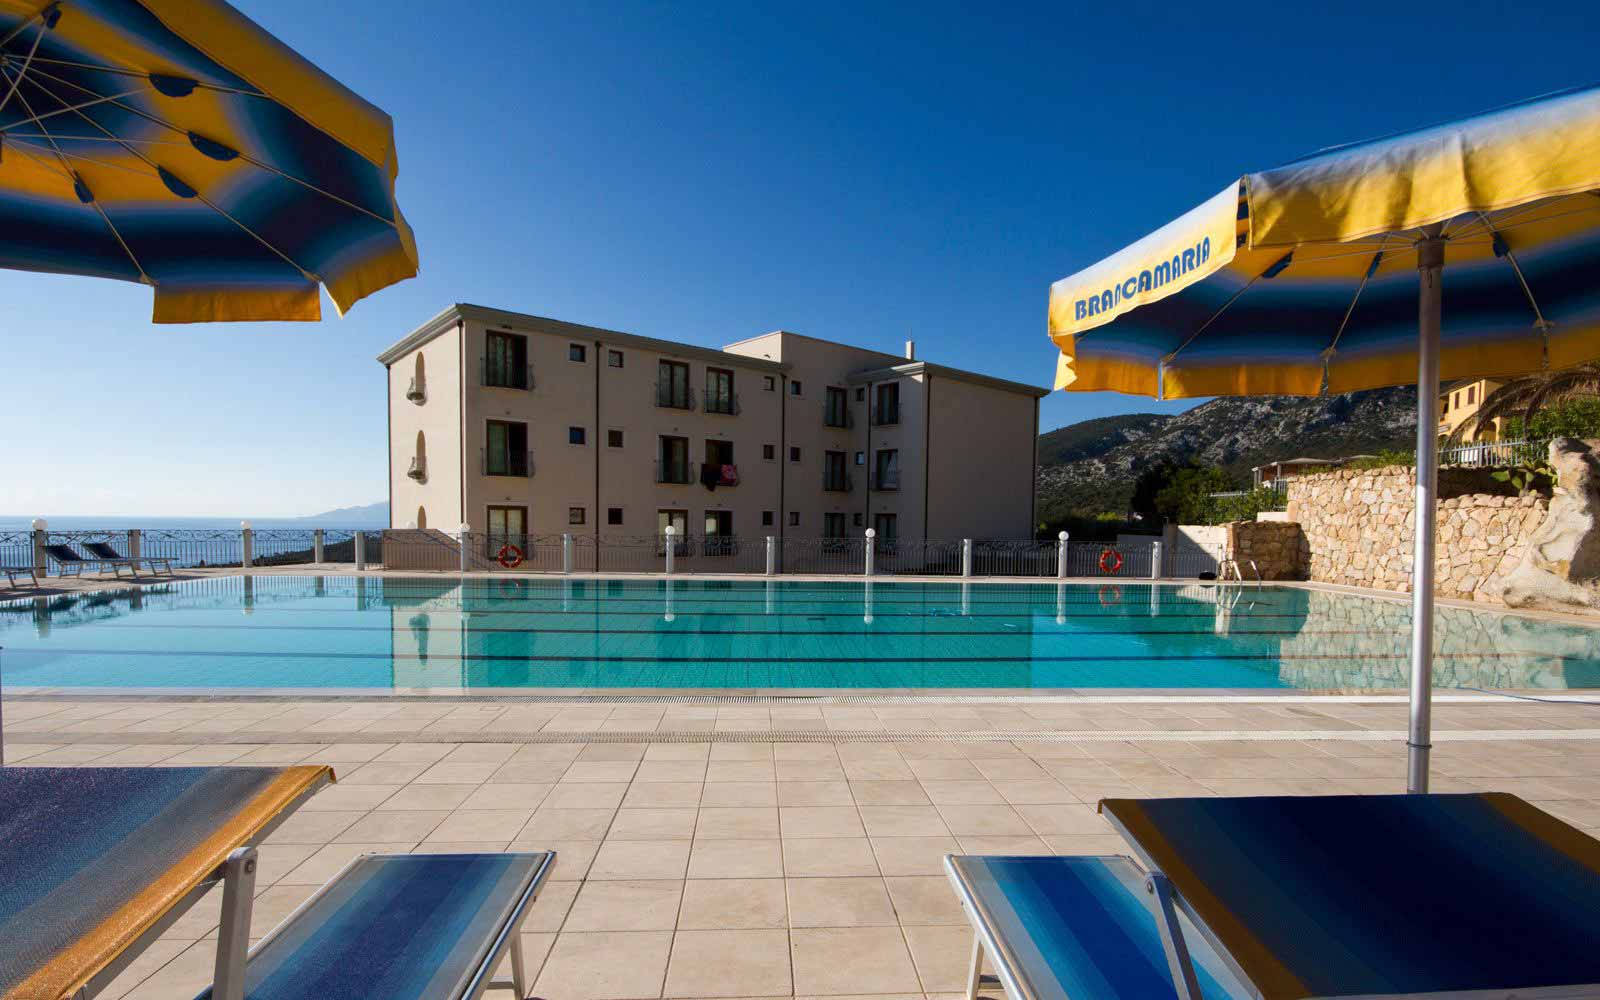 Pool at Hotel Brancamaria